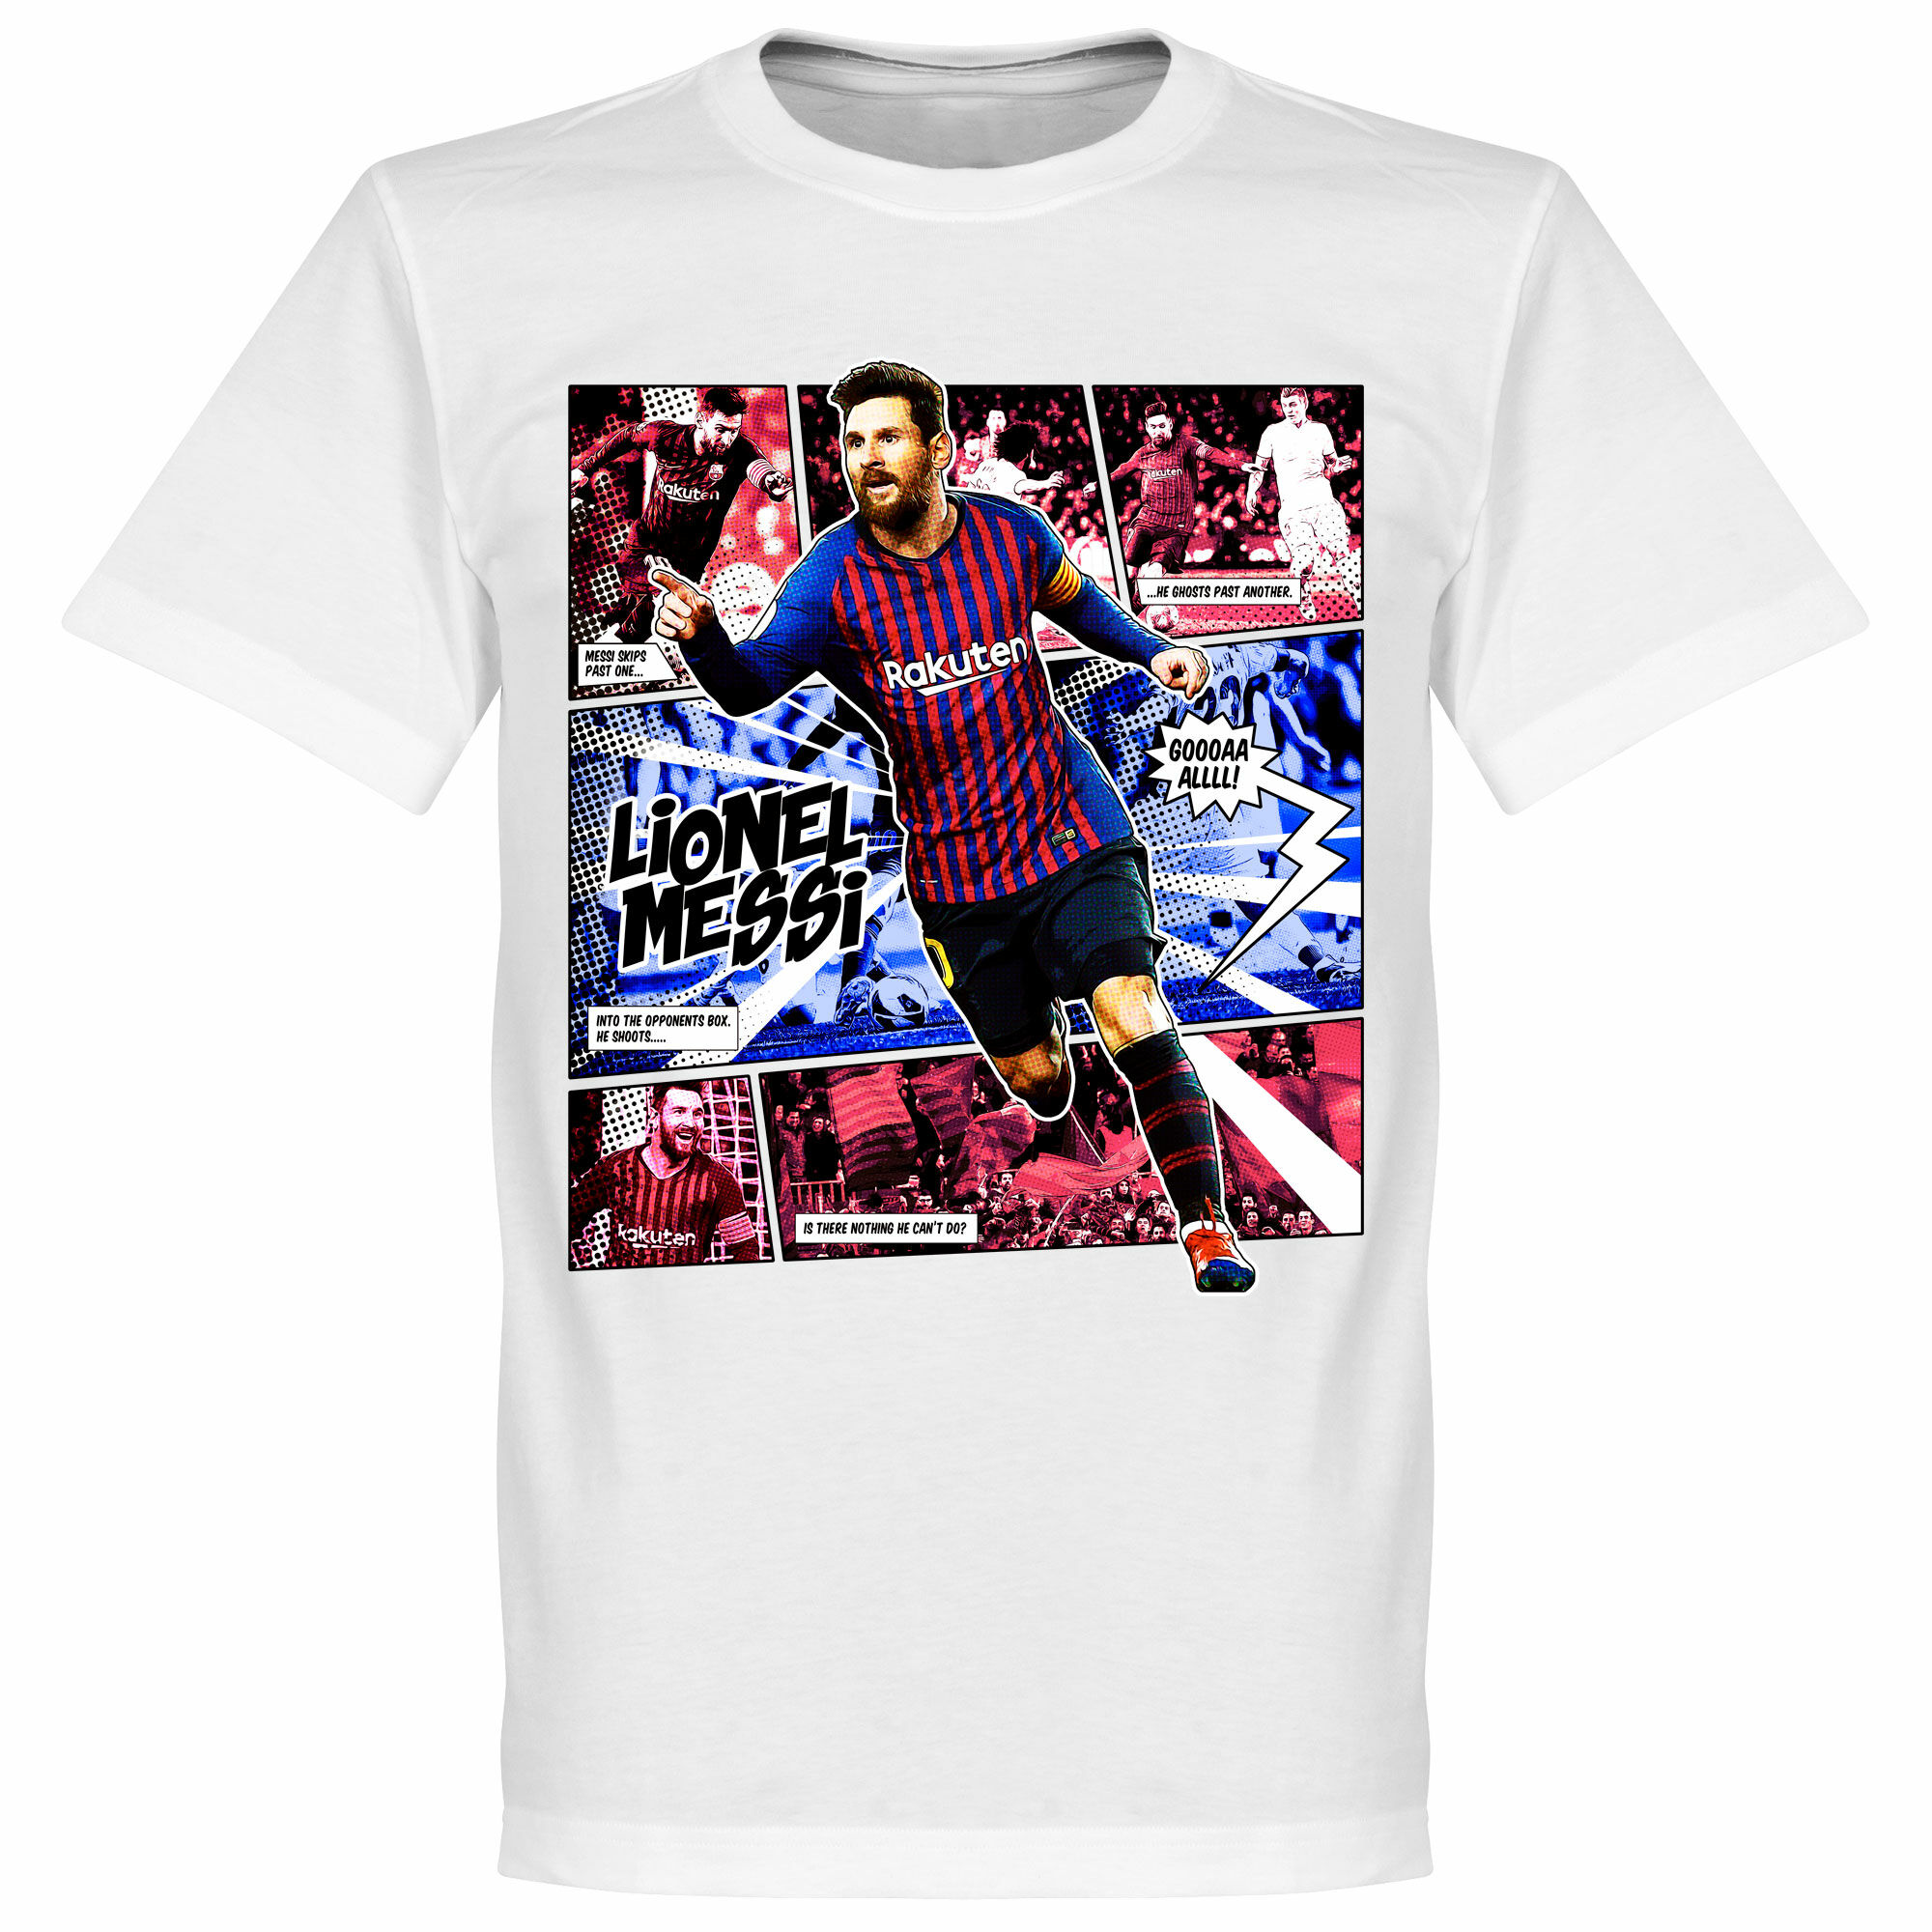 Barcelona - Tričko "Comic" - bílé, Lionel Messi